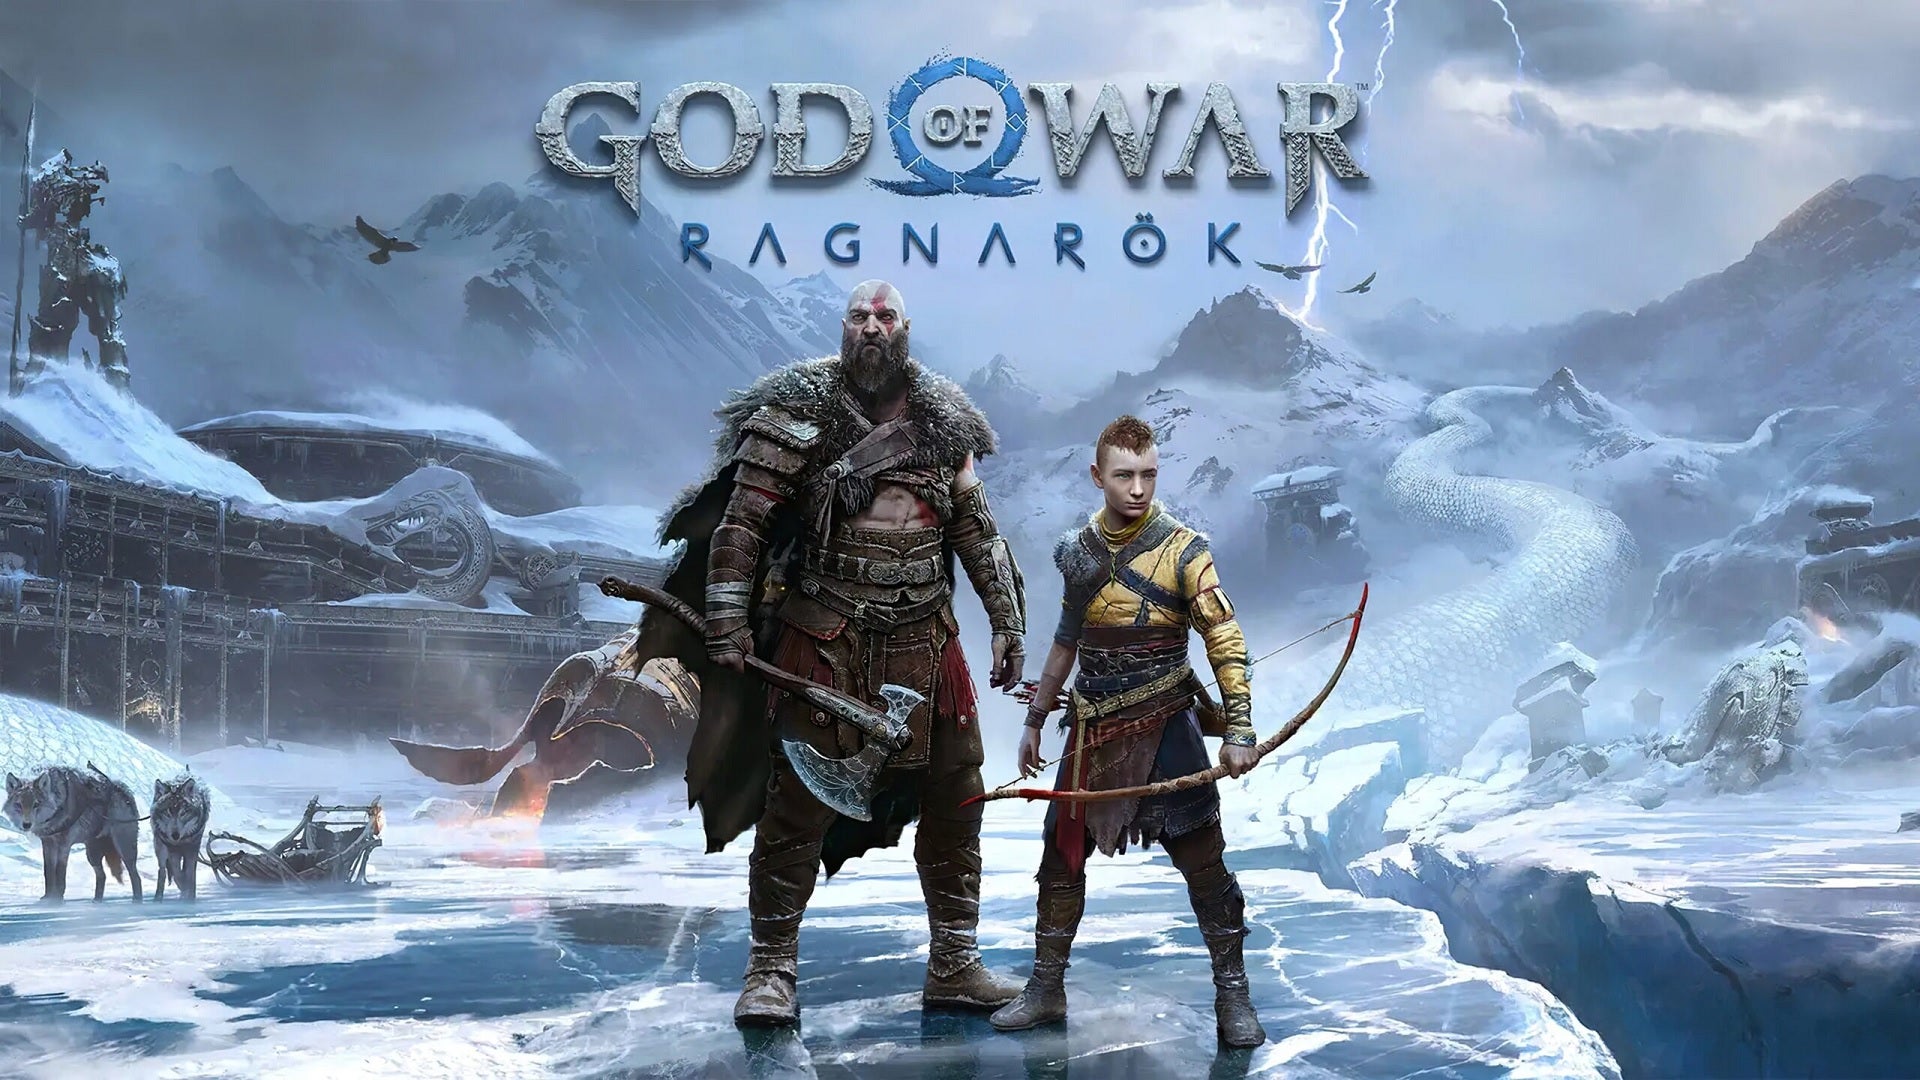 Official promo art for God of War Rag